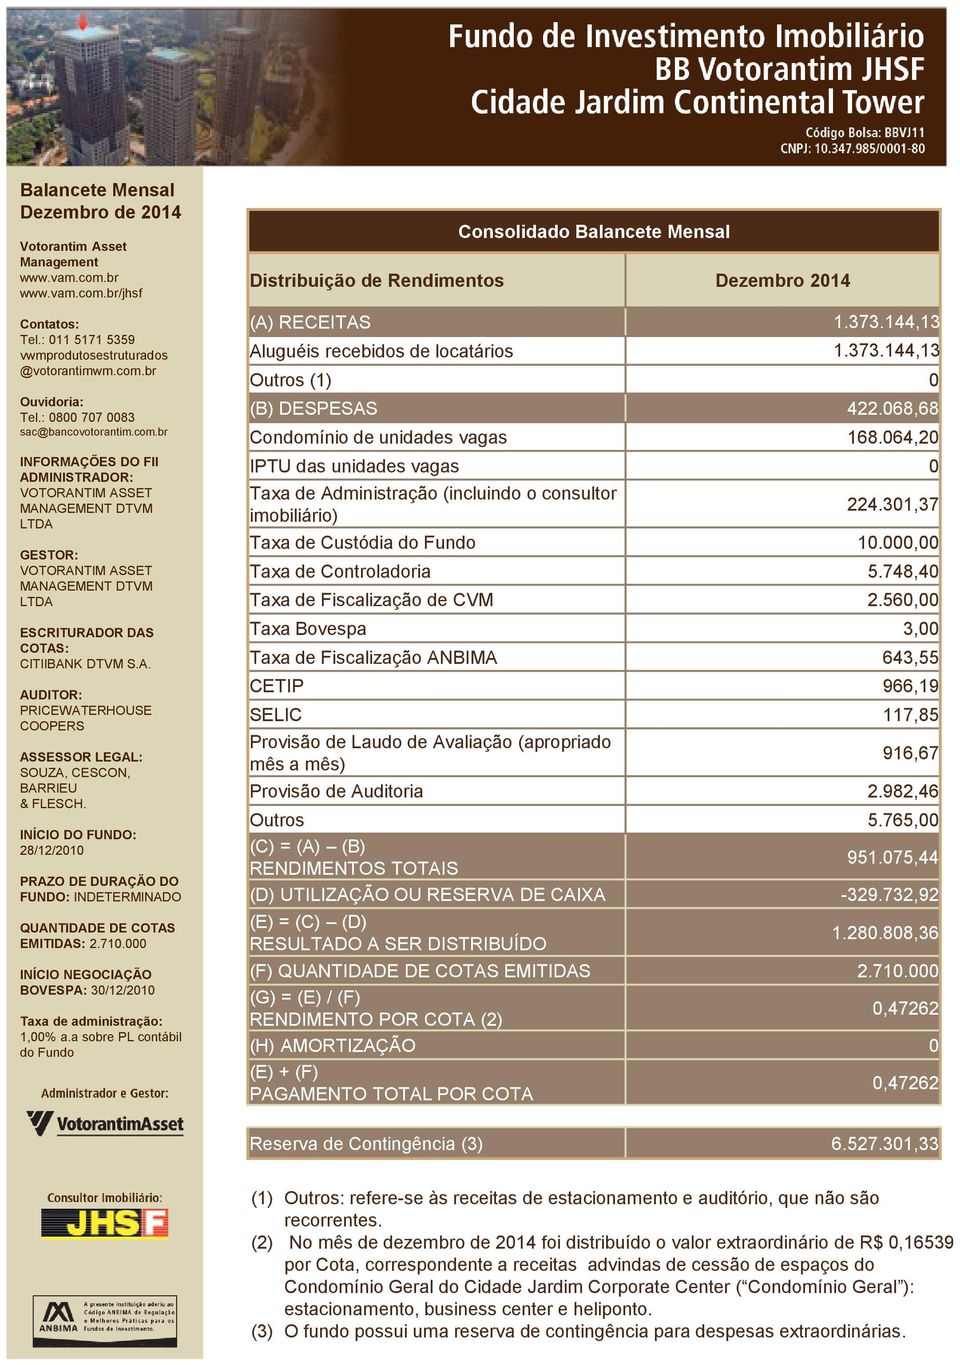 748,40 Taxa de Fiscalização de CVM 2.